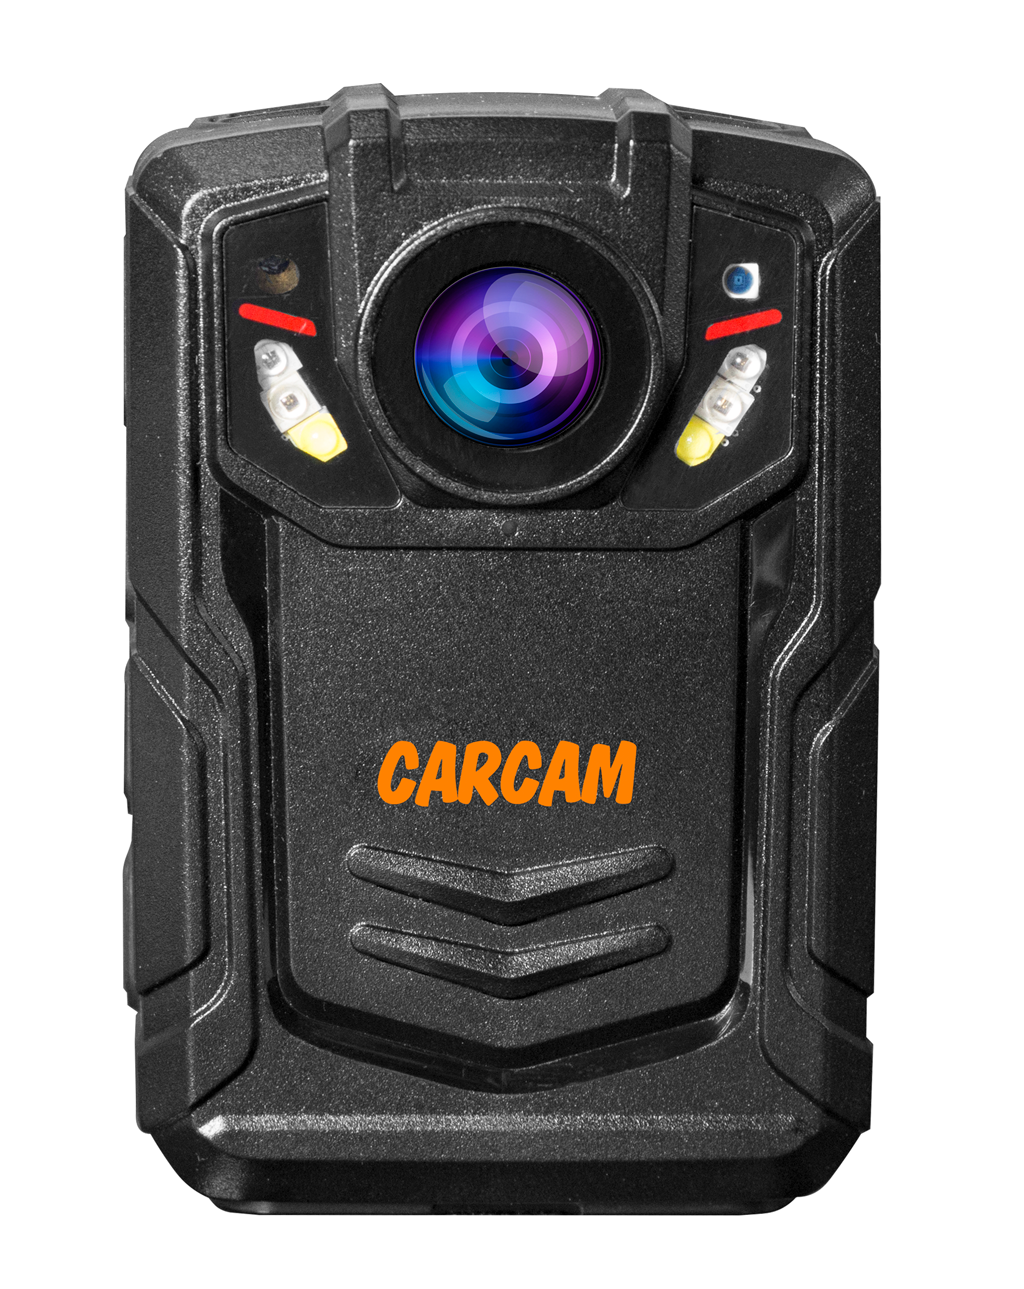 Персональный видеорегистратор CARCAM COMBAT 2S PRO 128GB персональный full hd видеорегистратор с функцией стабилизации изображения carcam combat 2s pro